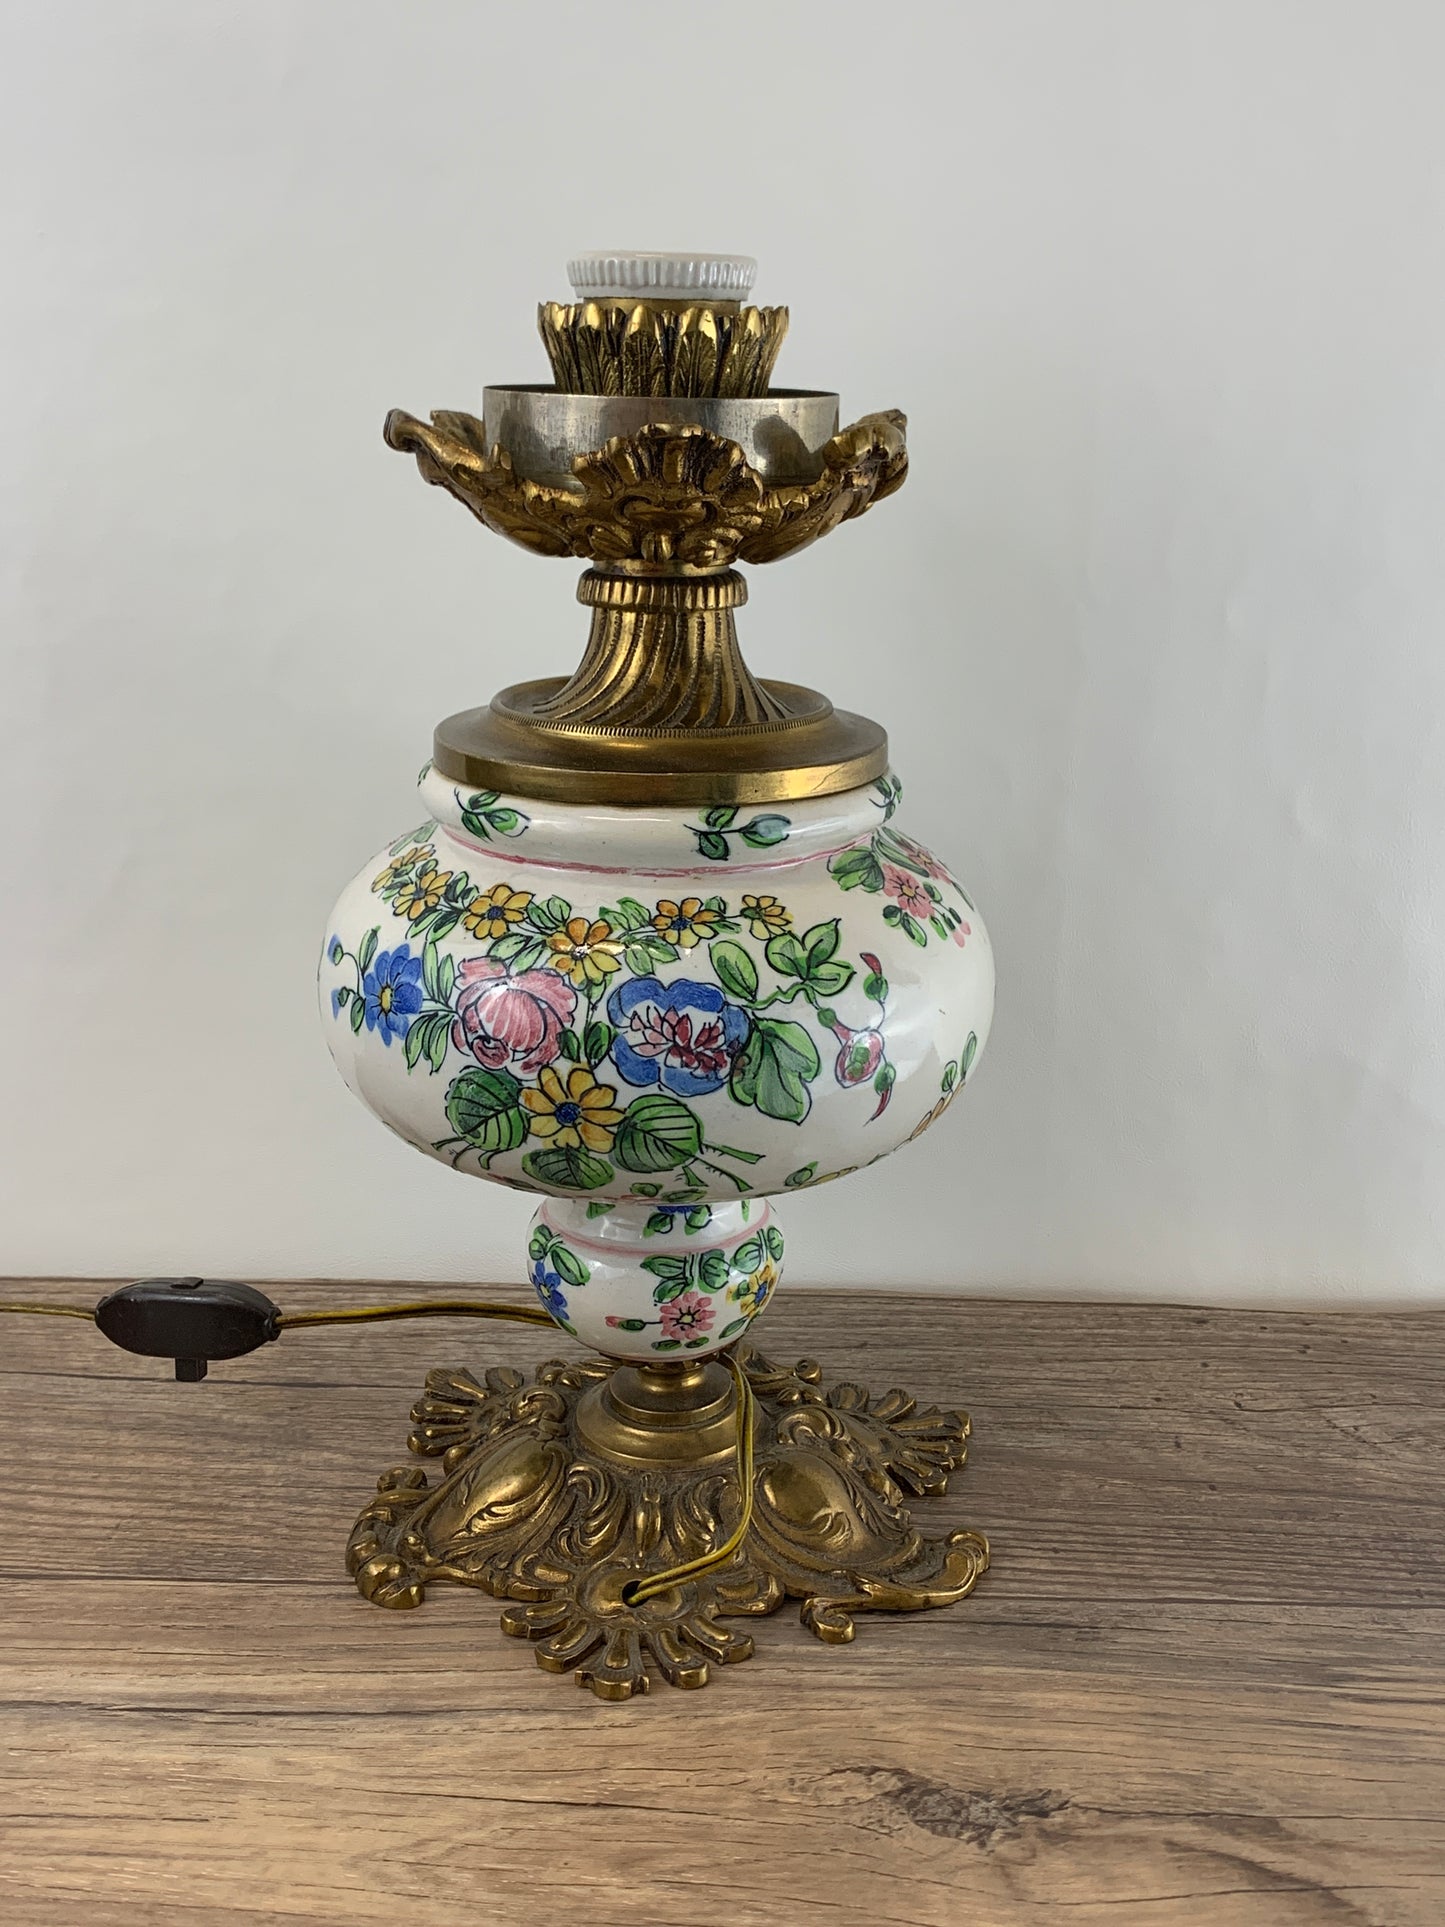 Cast Brass and Ceramic Antique Lamp